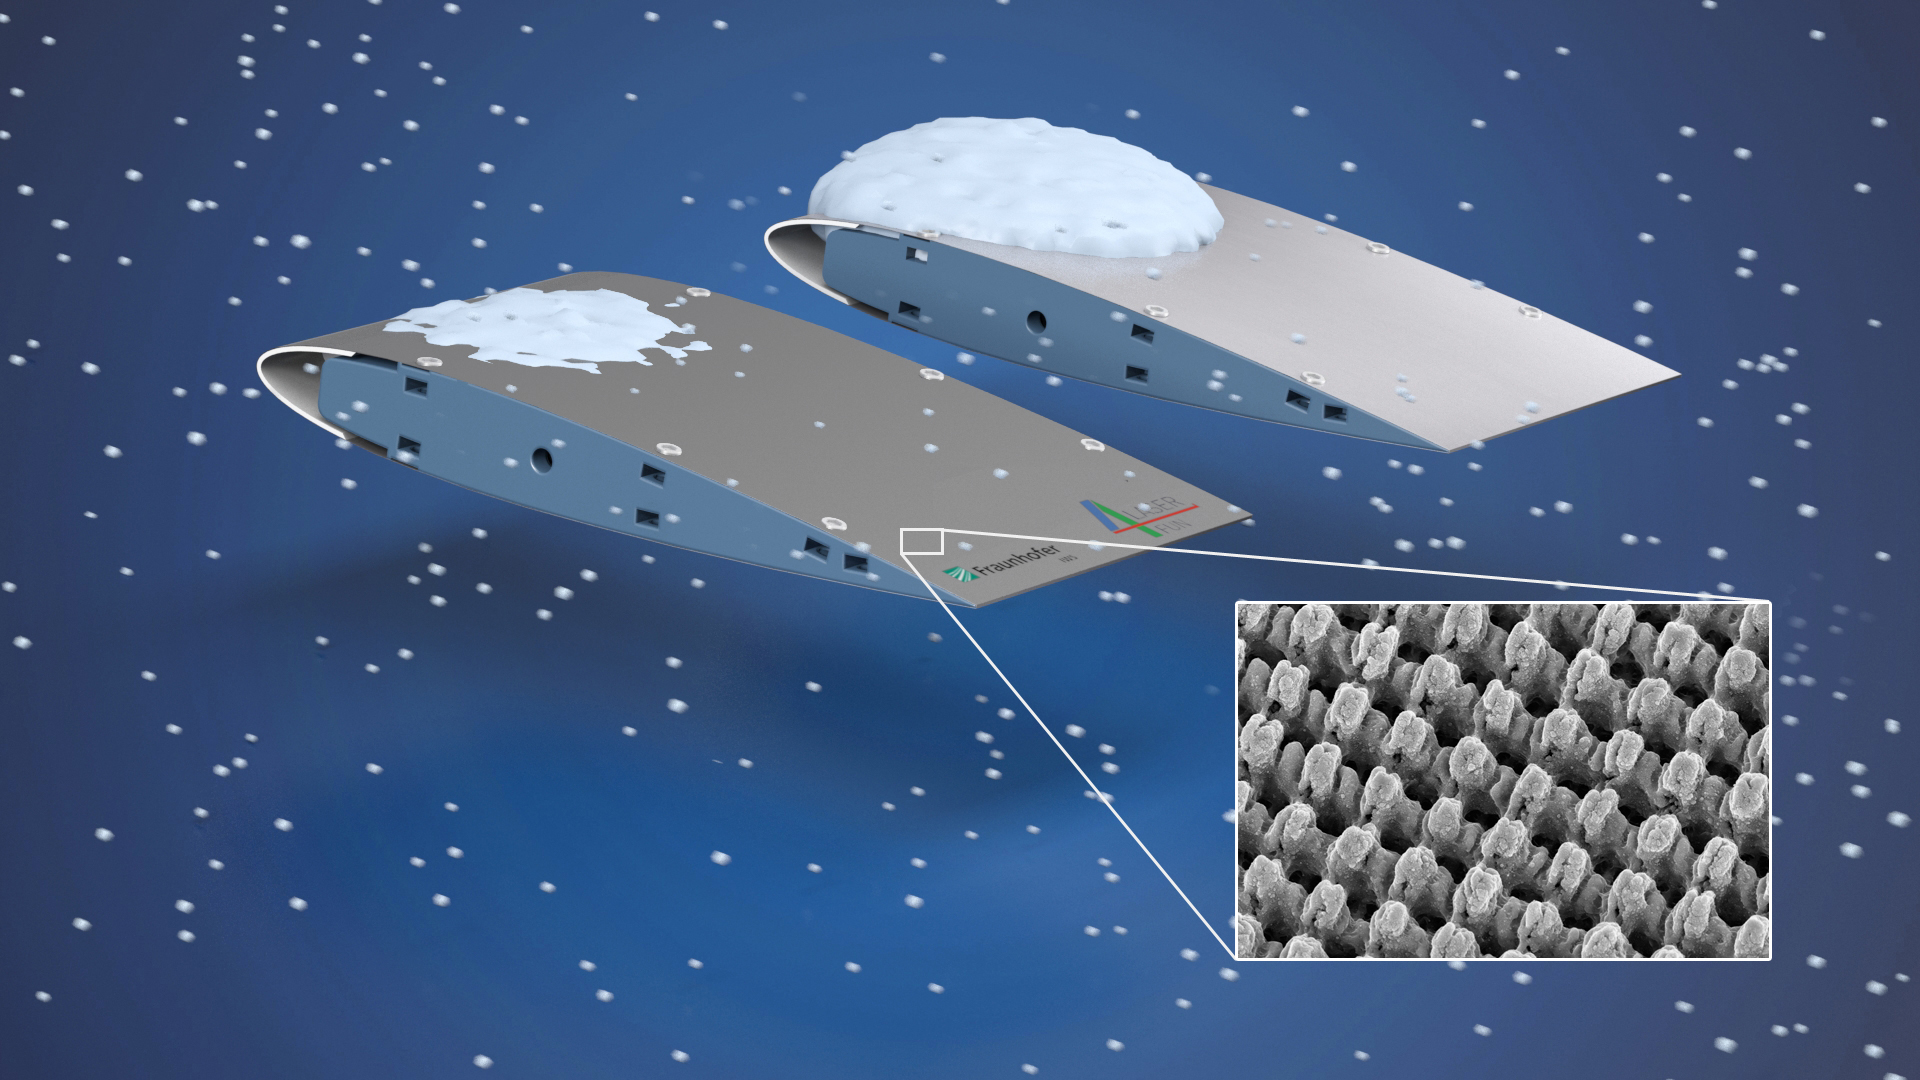 Mit Direct Laser Interference Patterning (DLIP) lassen sich komplexe, mäanderförmige Oberflächenstrukturen im Mikrometer- und Submikrometerbereich generieren, die das Anhaften von Eis verhindern oder stark reduzieren.